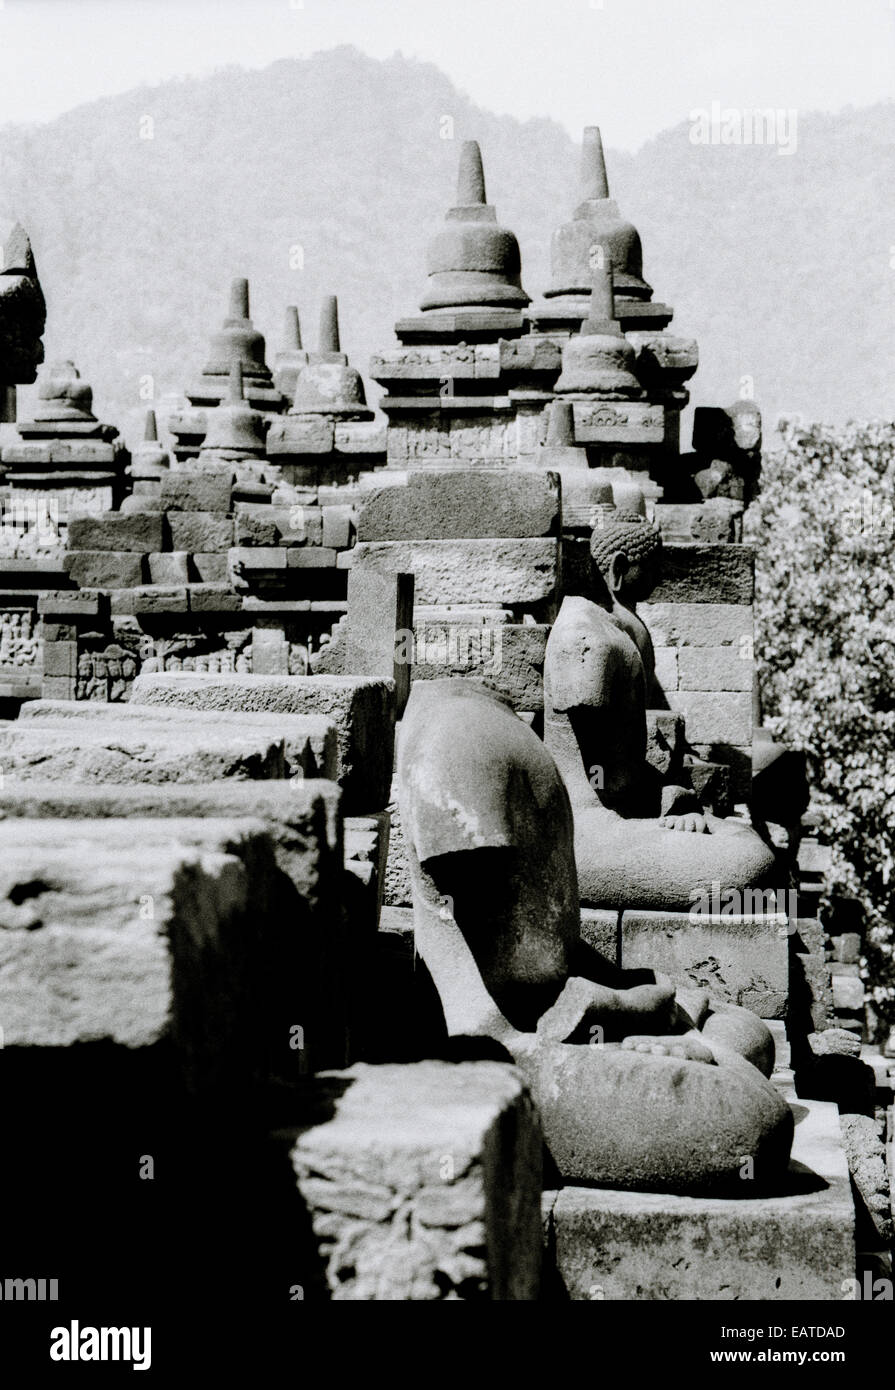 Welt zu reisen. Buddhistische Denkmal Borobudur in Magelang Yogyakarta in Indonesien in Südostasien. Fernweh-Eskapismus-Geschichte-Kultur Stockfoto